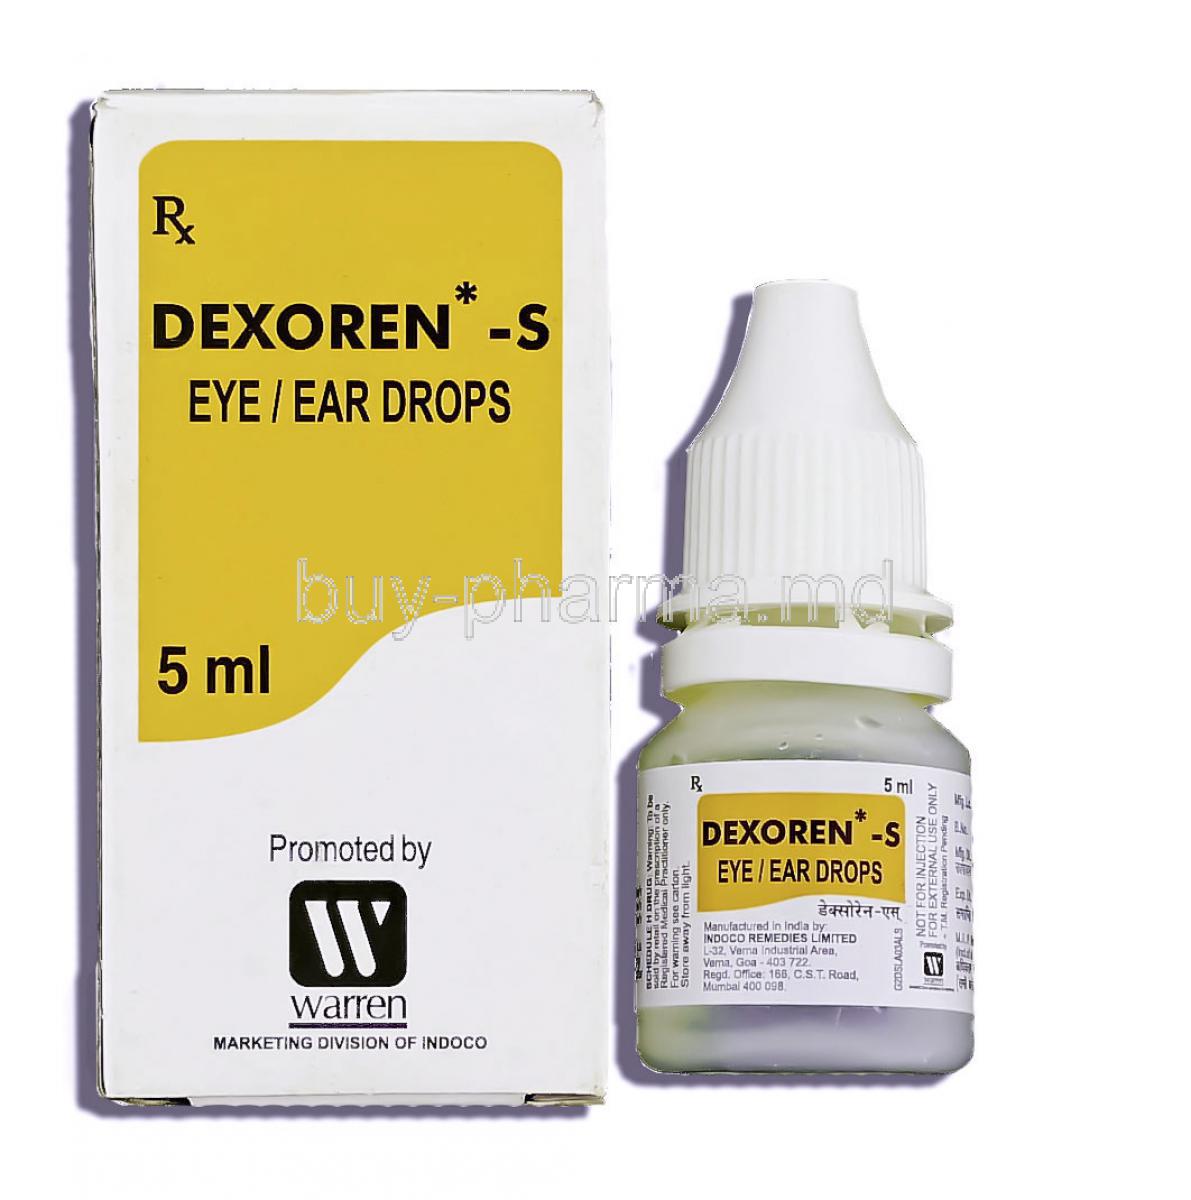 Dexoren-S, Doxamethasone 0.1% 5 Ml Ear/ Eye Drops (Warren/Indoco)